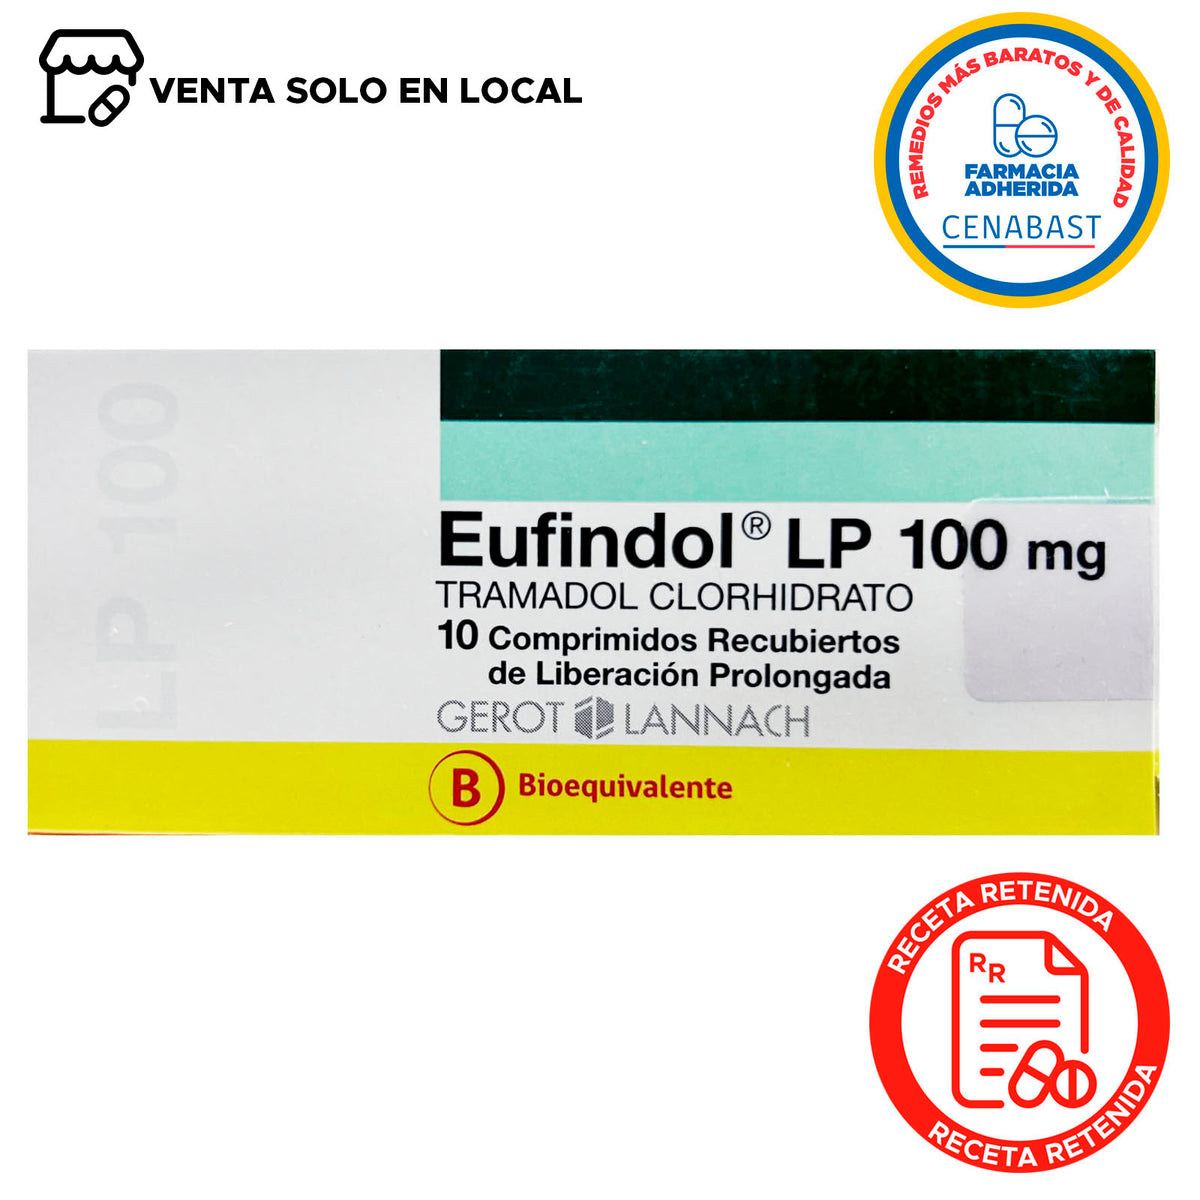 Eufindol LP Comprimidos Recubiertos de Liberación Prolongada 100mg Producto Cenabast